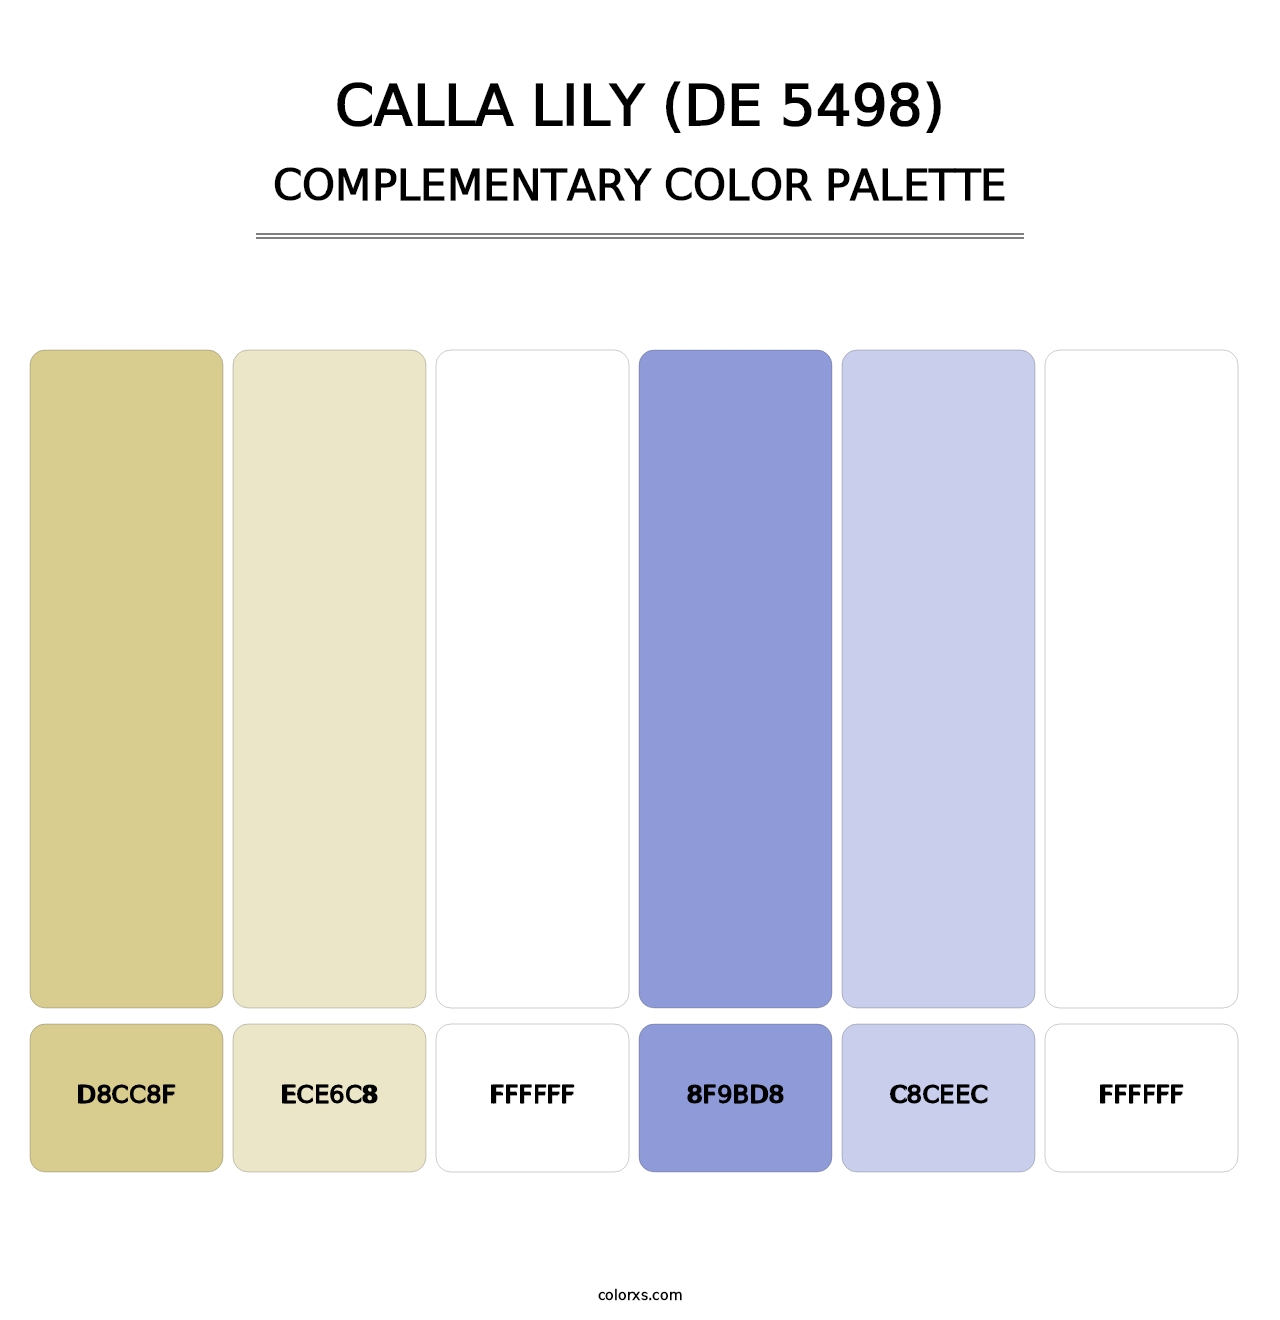 Calla Lily (DE 5498) - Complementary Color Palette